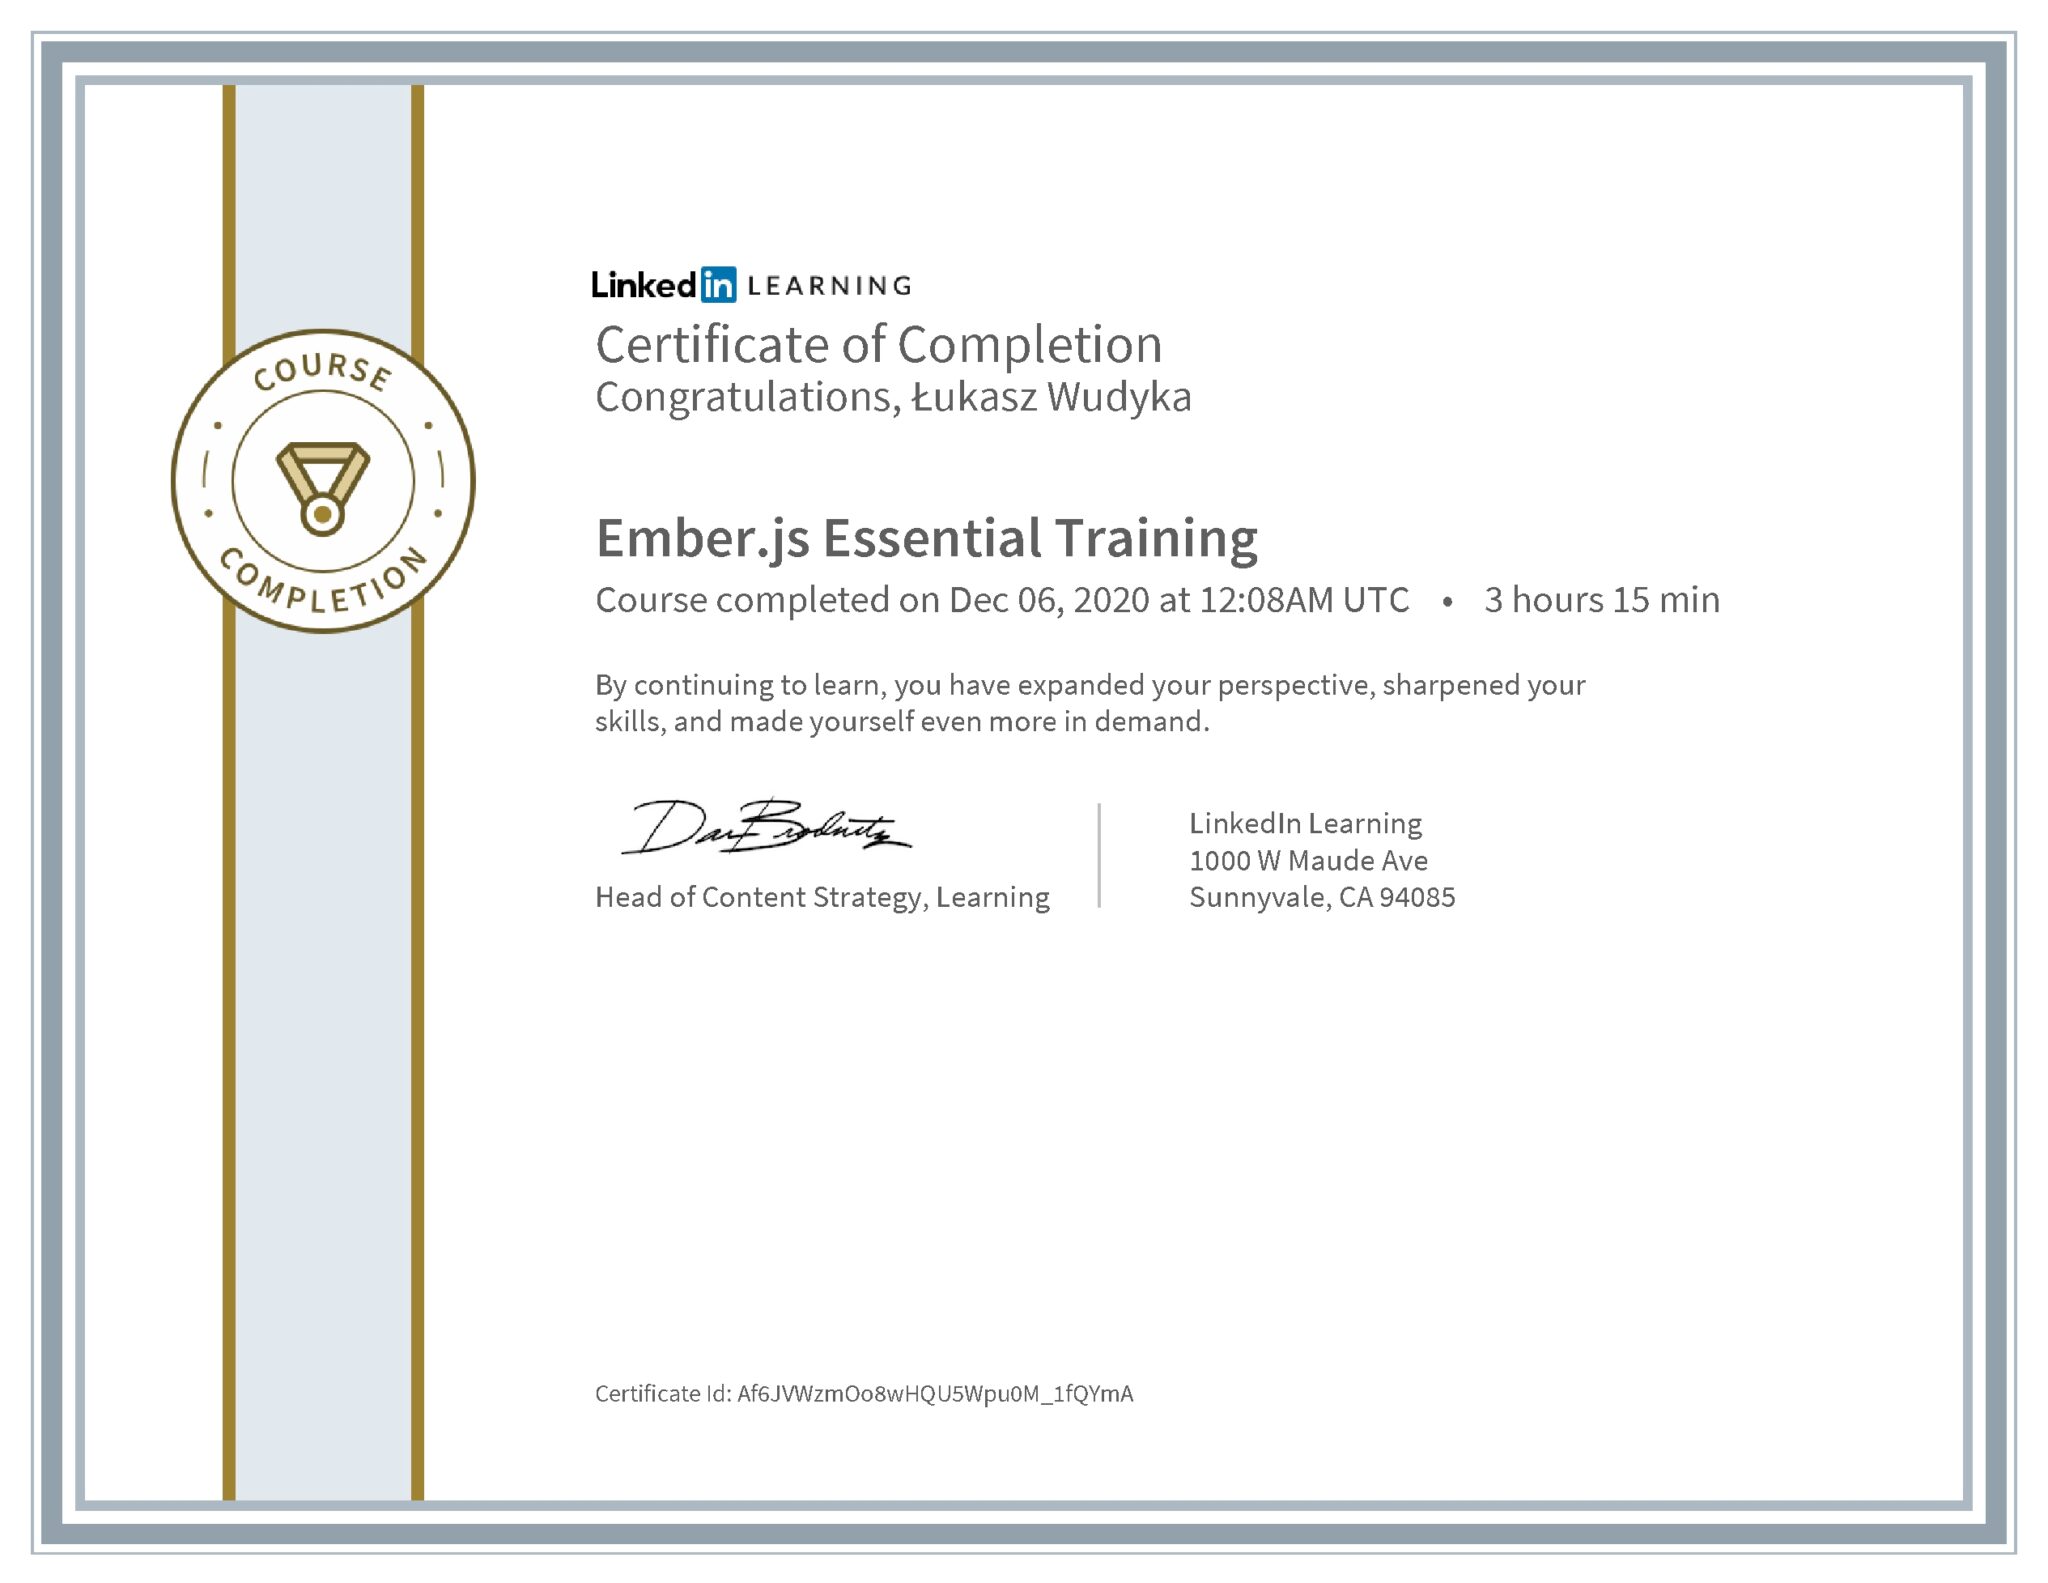 Łukasz Wudyka certyfikat LinkedIn Ember.js Essential Training